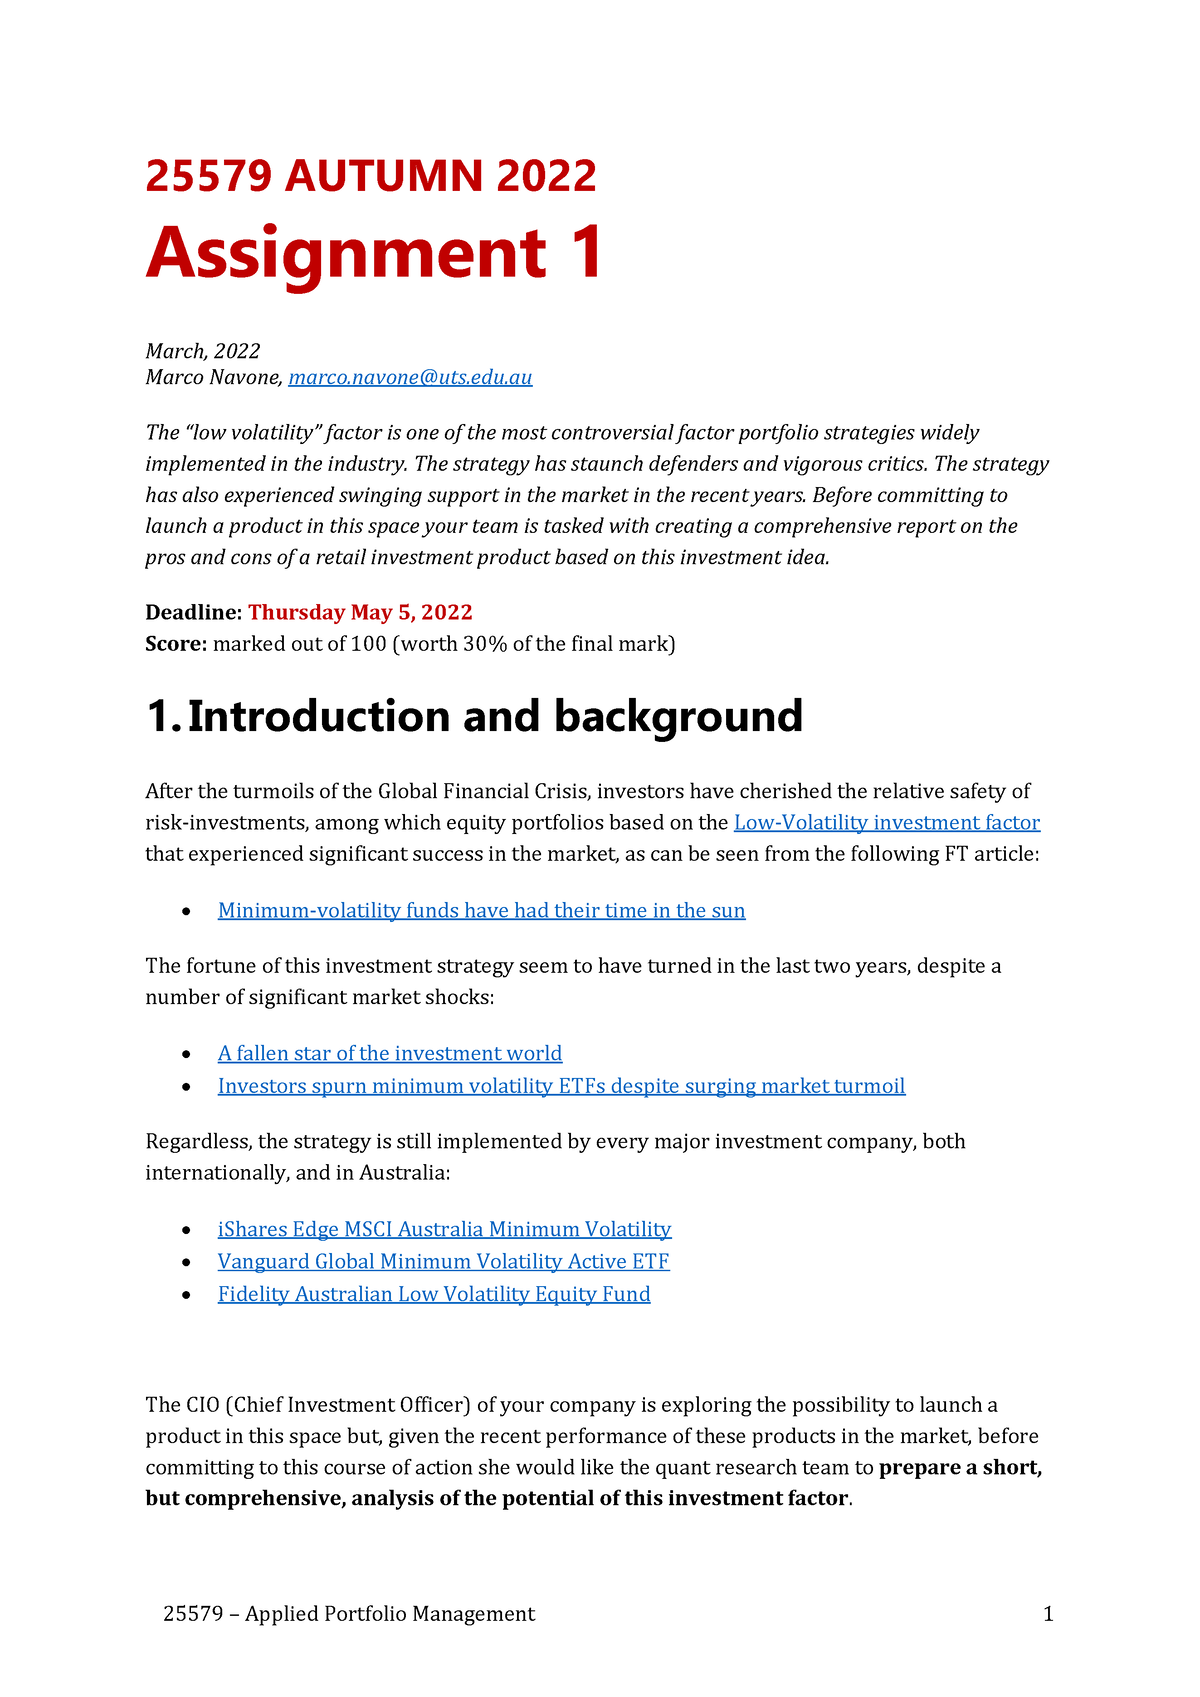 8609 assignment 1 autumn 2022